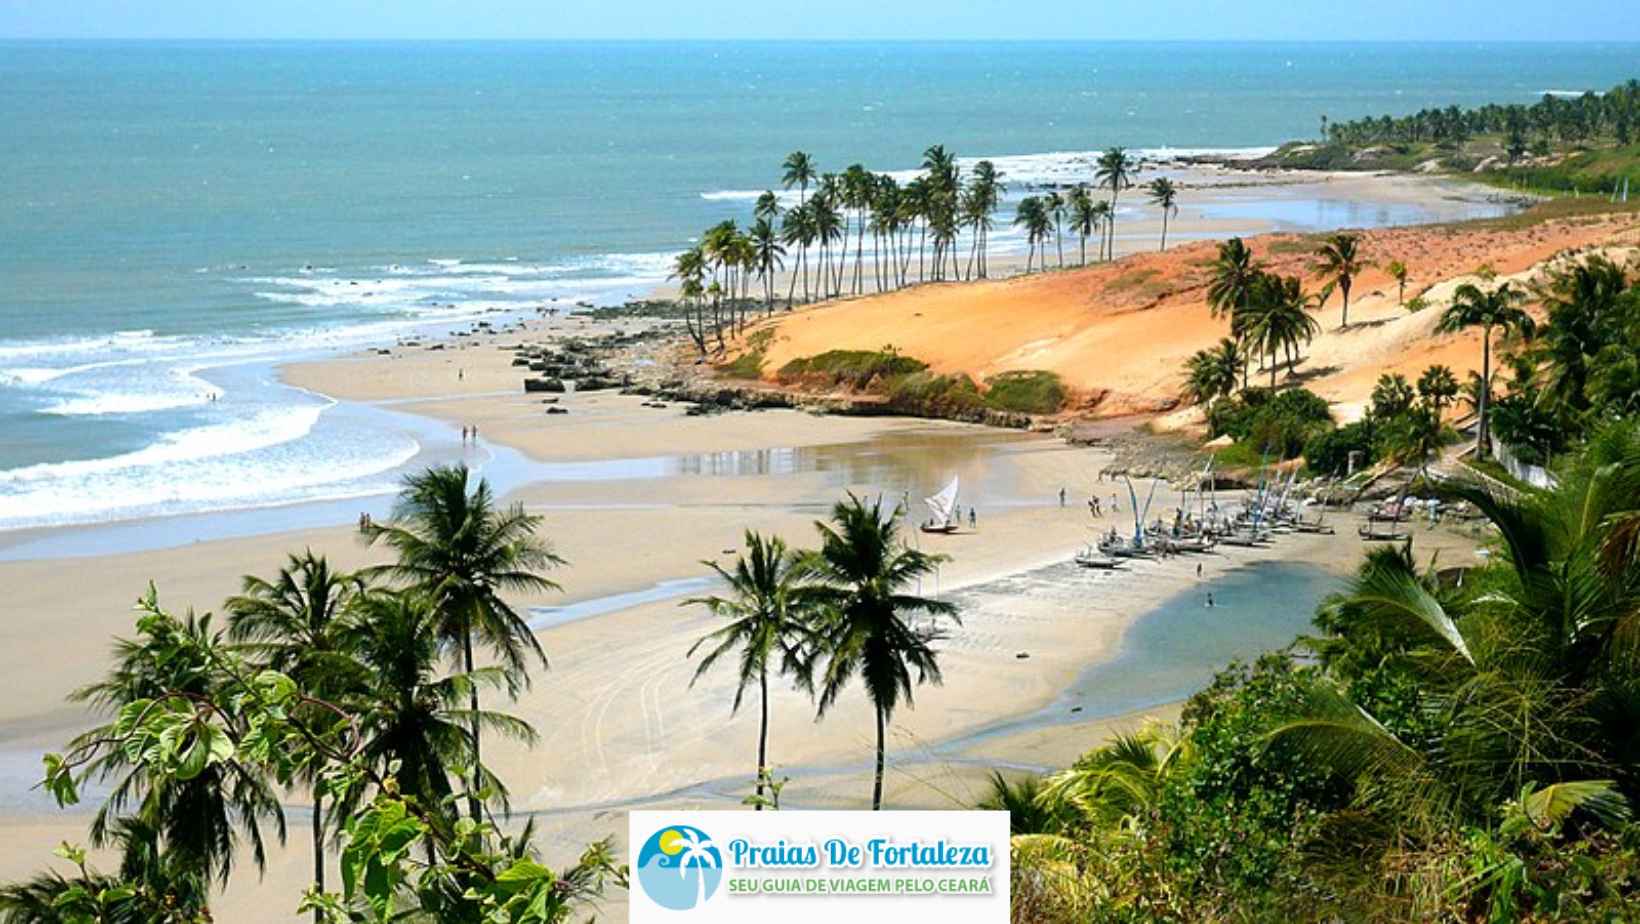 Descubra as Maravilhas da Praia da Lagoinha A Experiência de Uma das Melhores Praias do Ceará